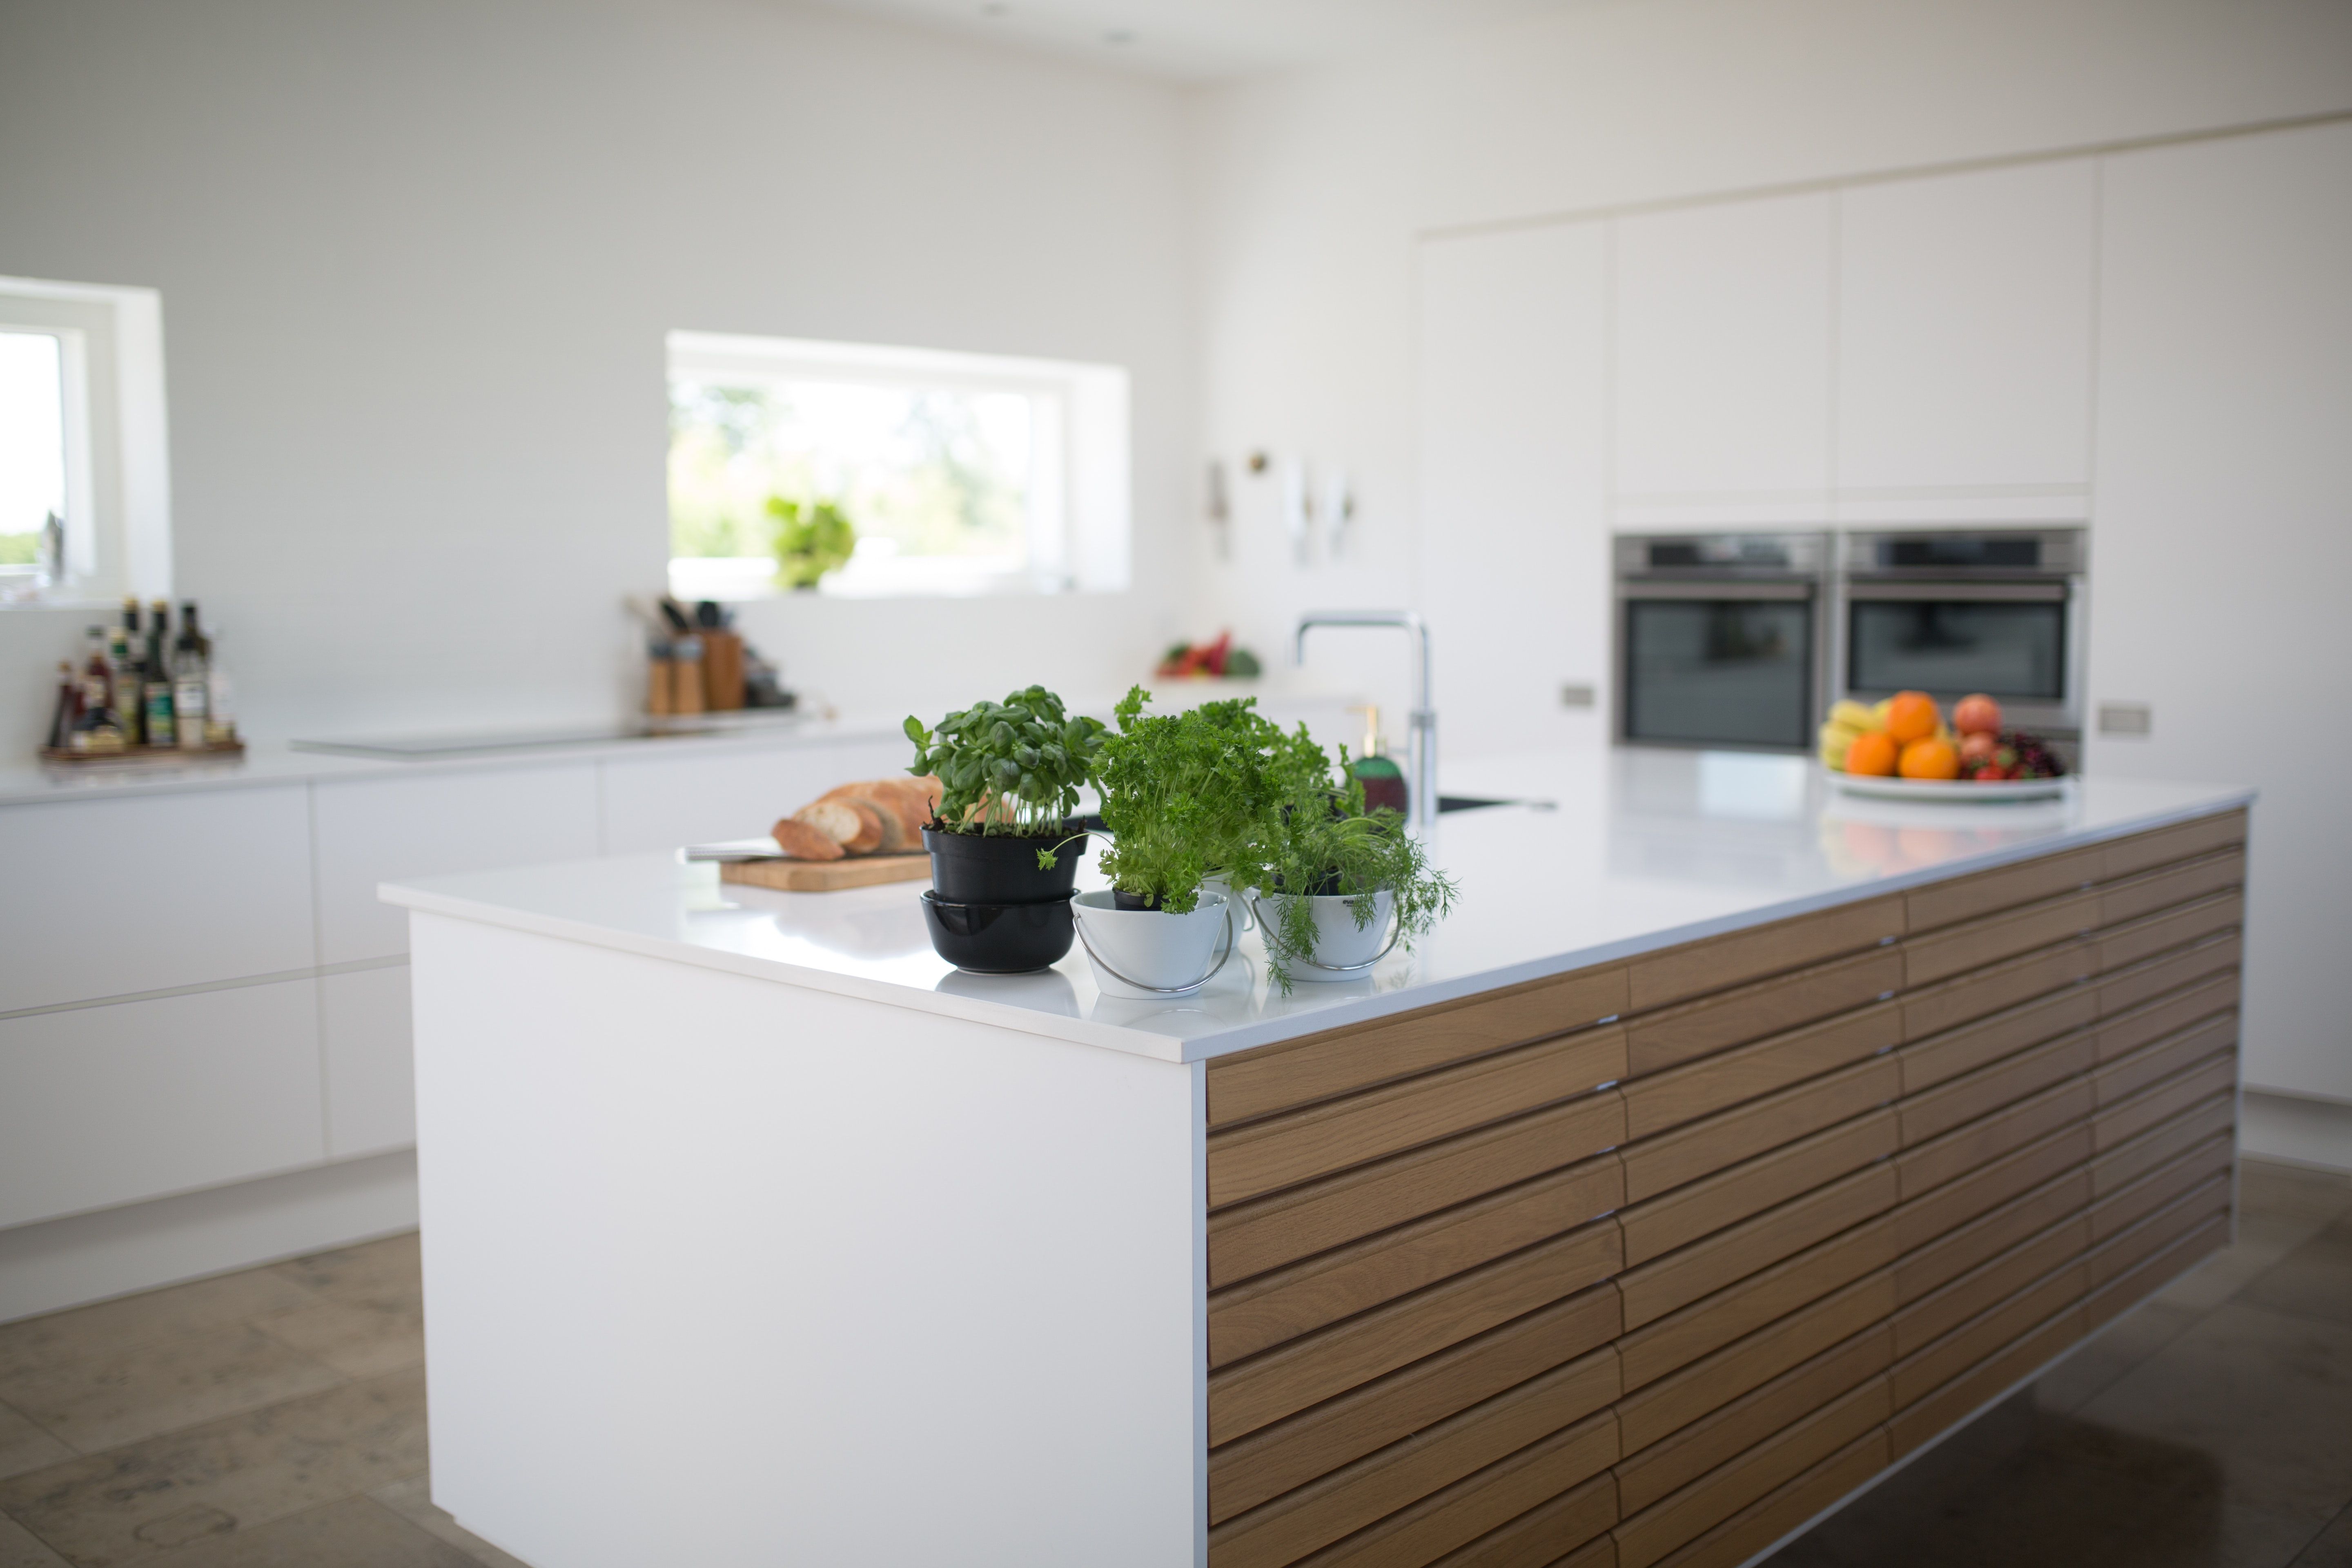 Навісні шафи в кухні - чи потрібні вони - які переваги та недоліки - Нерухомість